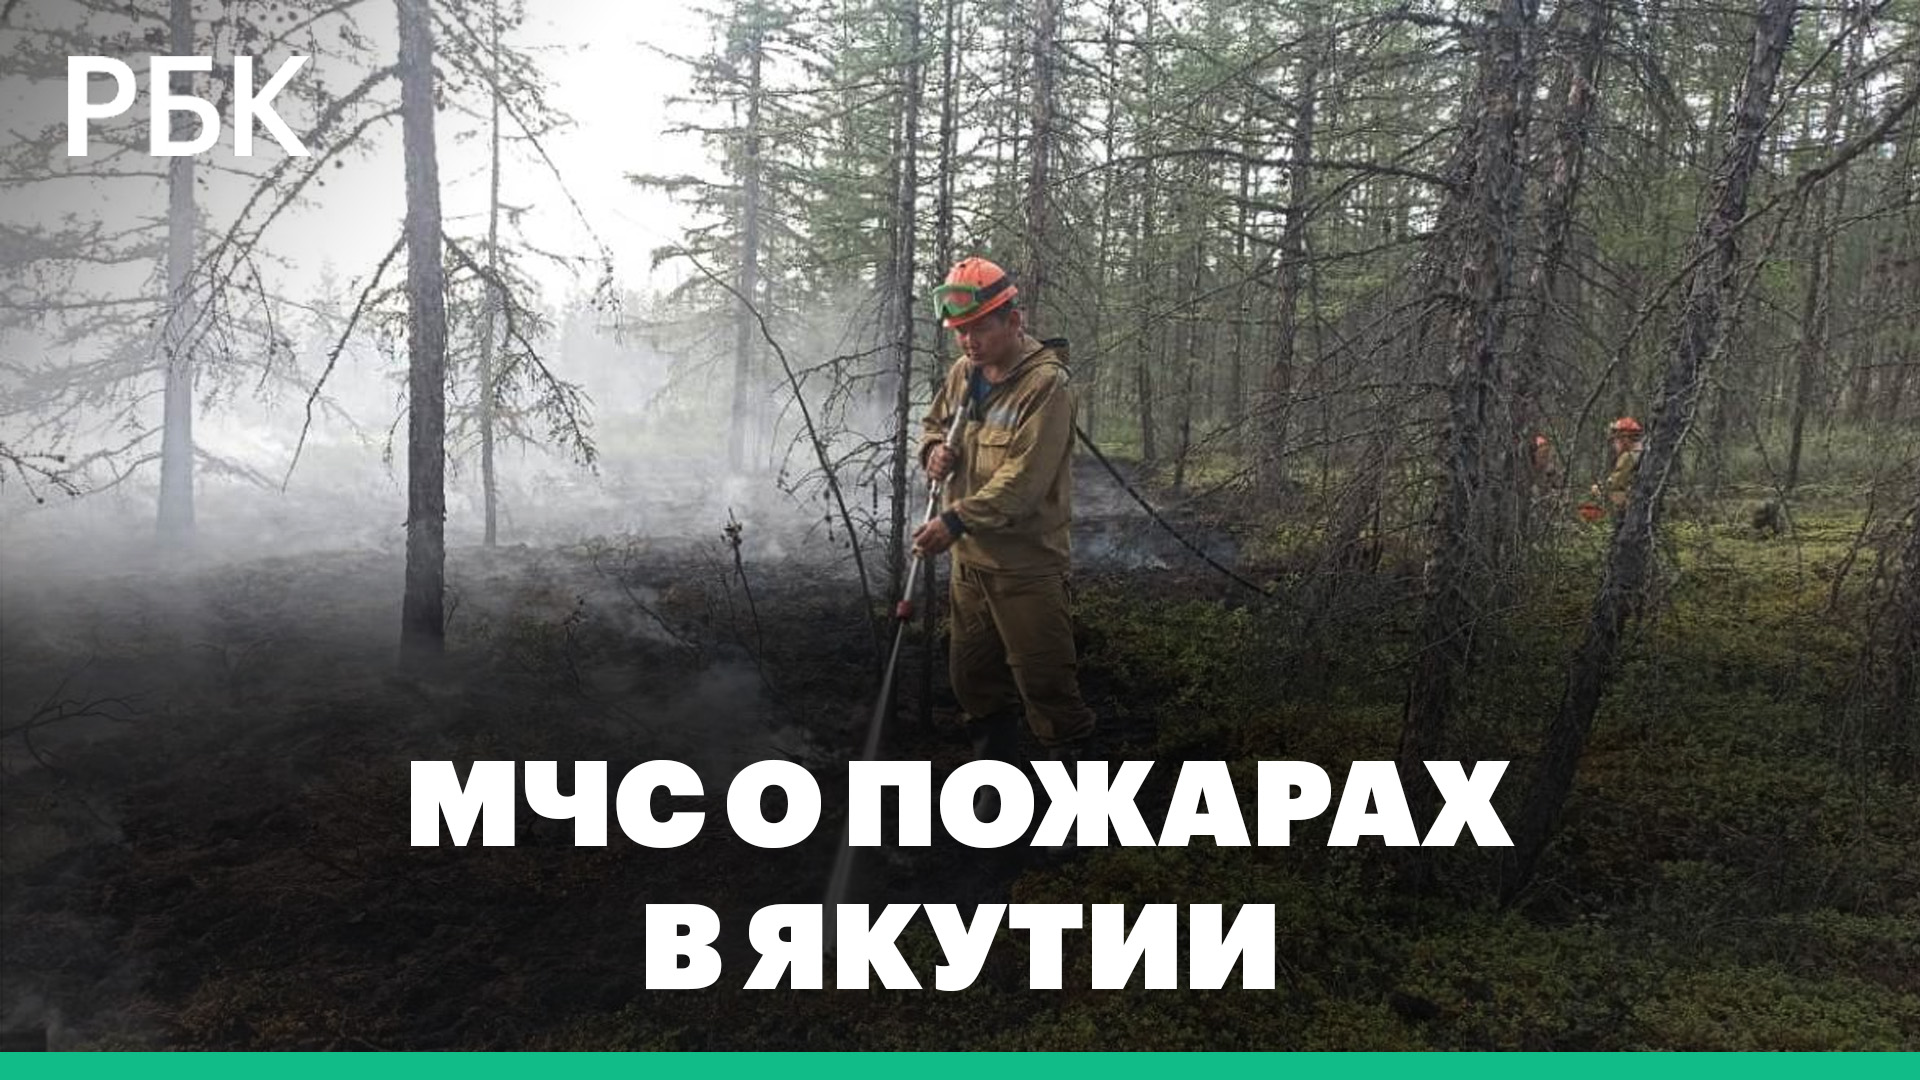 МЧС о последствиях лесных пожаров в Якутии